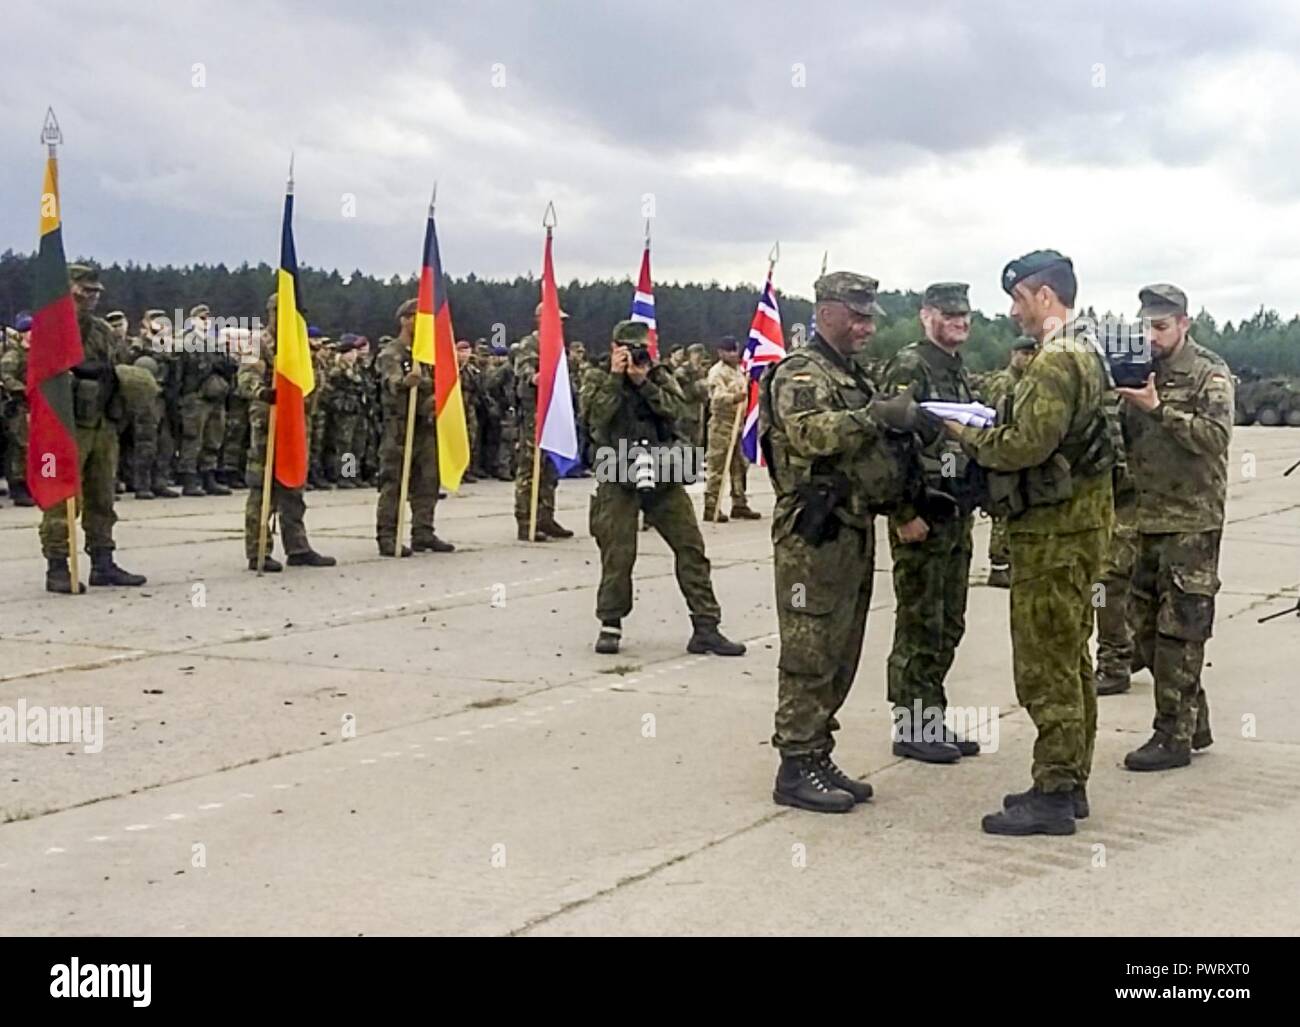 Der eiserne Wolf17-Flag wird dem Deutschen Oberstleutnant Christoph Huber, Kommandant der eFP-Battle Group Litauen vorgestellt, was bedeutet das Ende der Übung Juni 23. Eine Komponente von Sabre Streik 17, Bügeleisen Wolf ist entworfen, um die Beziehungen zwischen den Verbündeten in der NATO zu stärken und die Interoperabilität zu verbessern. Zum ersten Mal in der Geschichte der Übung, dass die NATO für verbesserte Vorwärts Präsenz Kampftruppen wurden zusammen als Teil einer multinationalen Division integriert, synchronisiert und Abschreckung - orientierte Ausbildung entwickelt, um die Interoperabilität und Kompatibilität der Armeen der beteiligten Nationen zu verbessern. Stockfoto